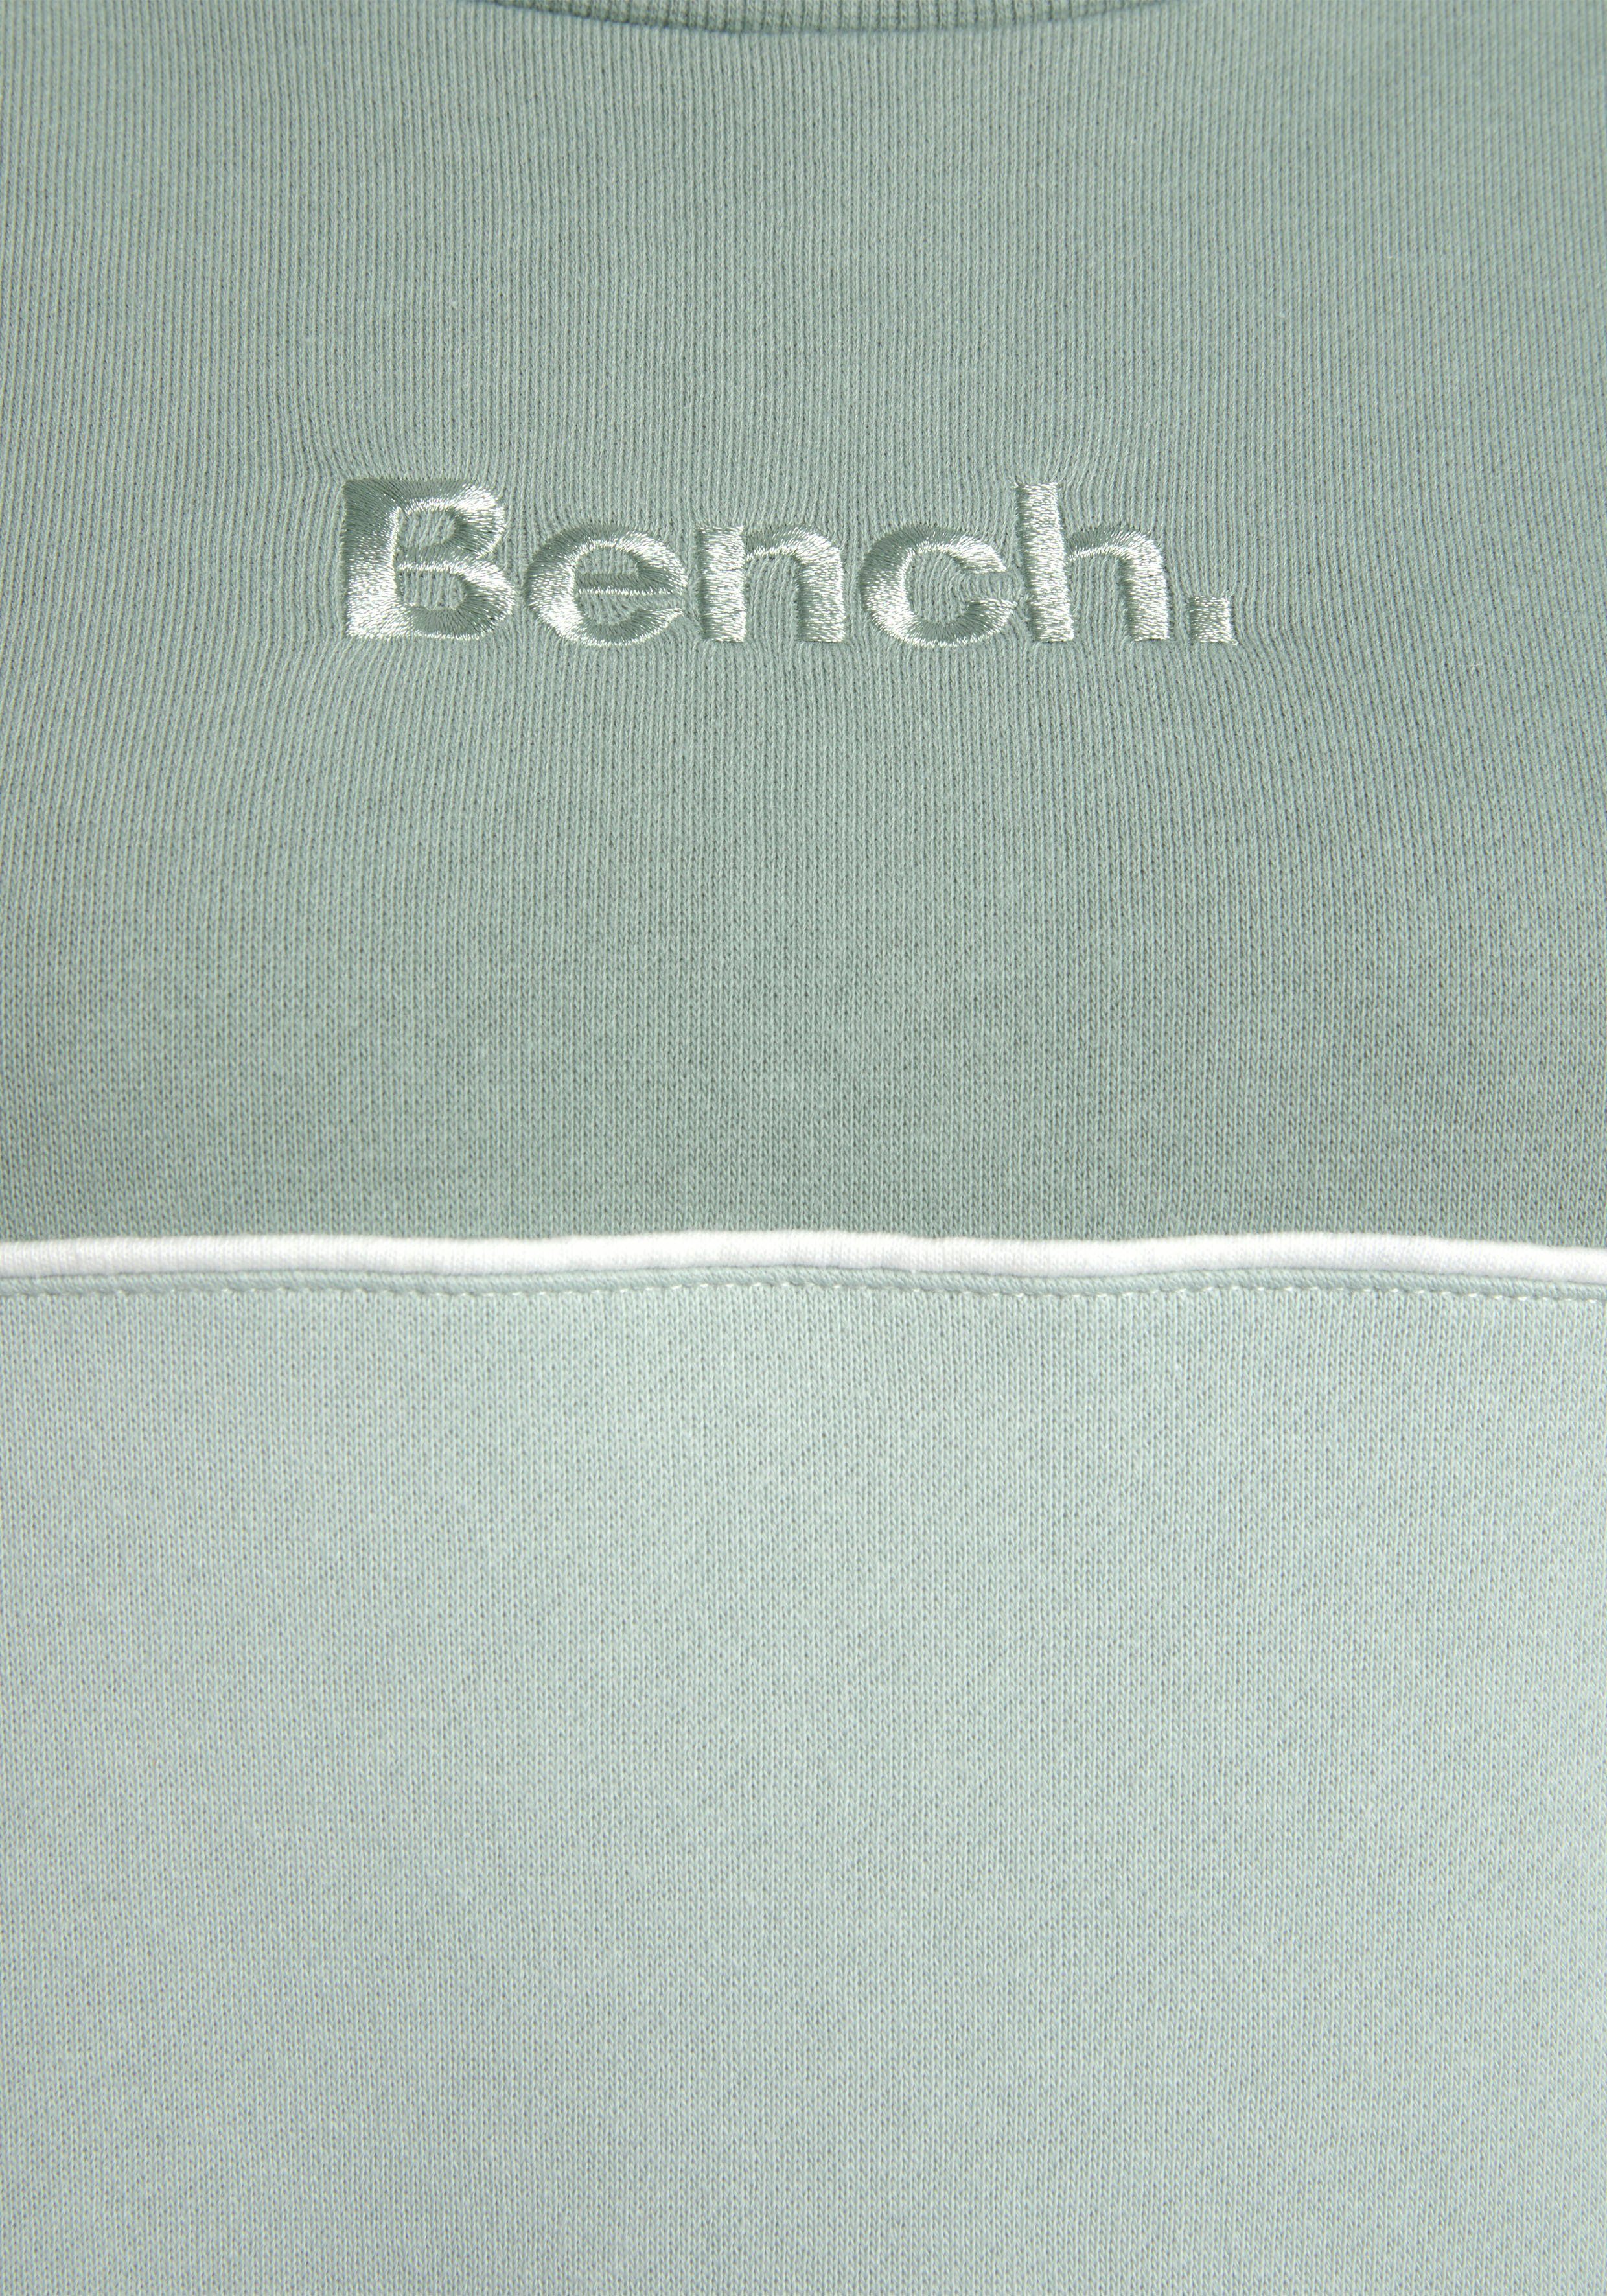 Bench. Sweatkleid in zwei Logostickerei grün-graugrün Farben mit